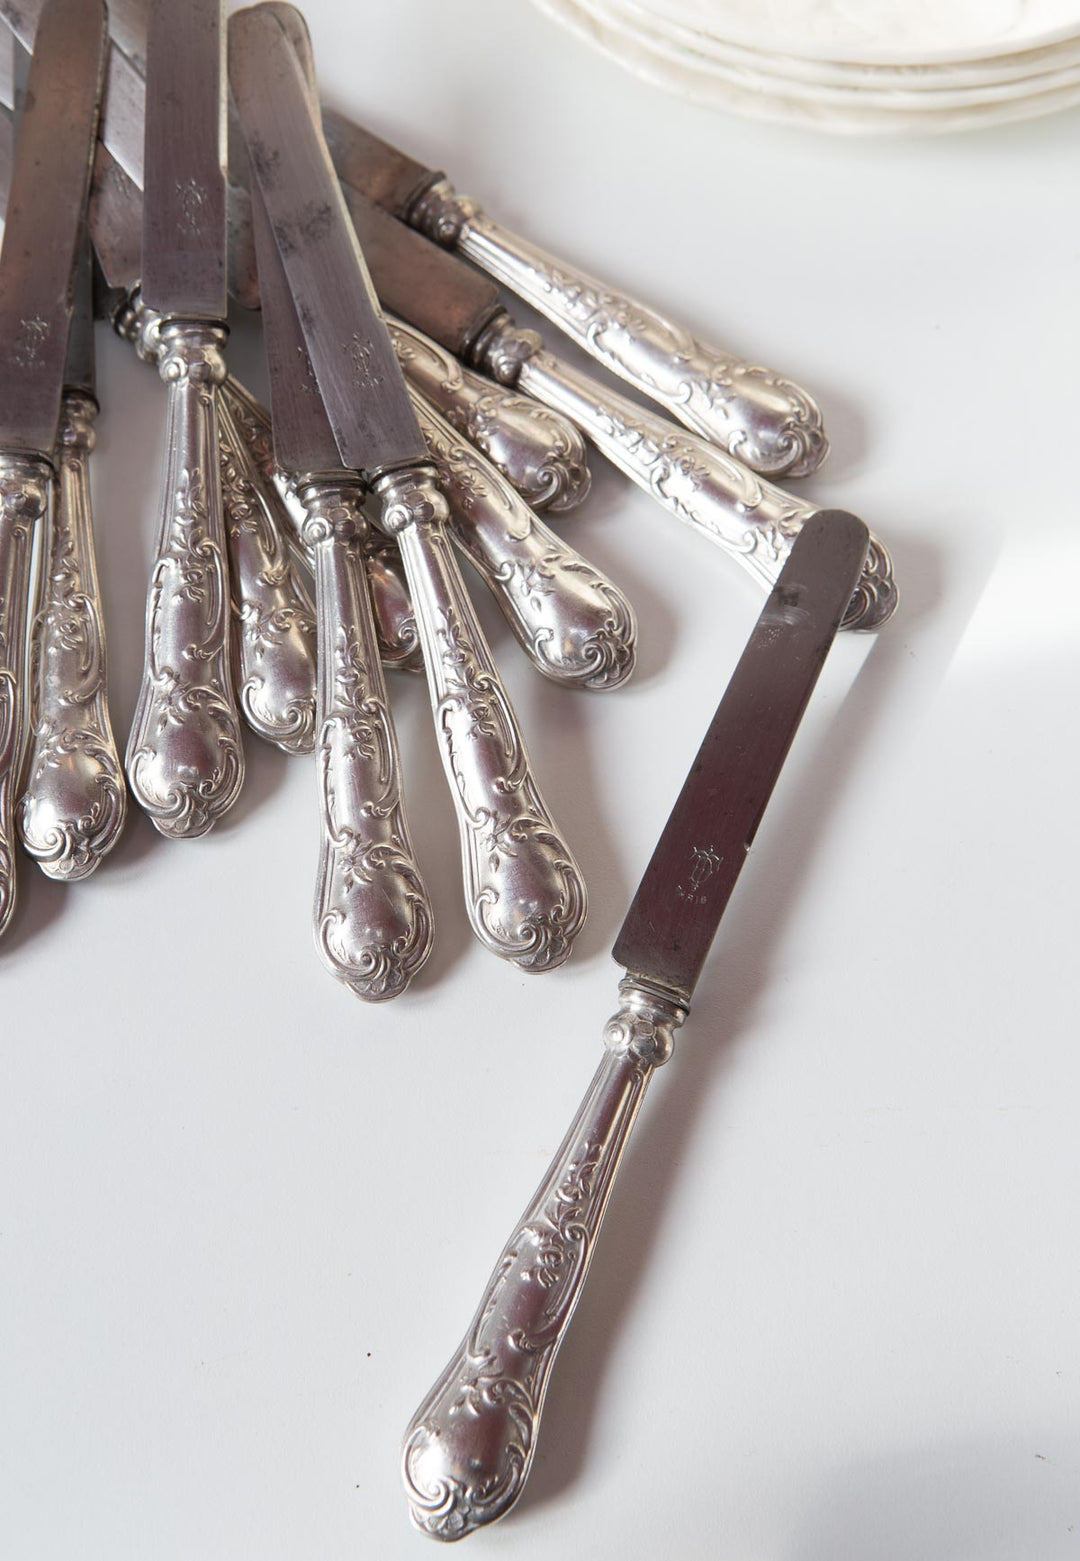 Juego 12 cuchillos franceses estilo Luis XV c. 1900 cubiertos antique french flatware anciens couverts